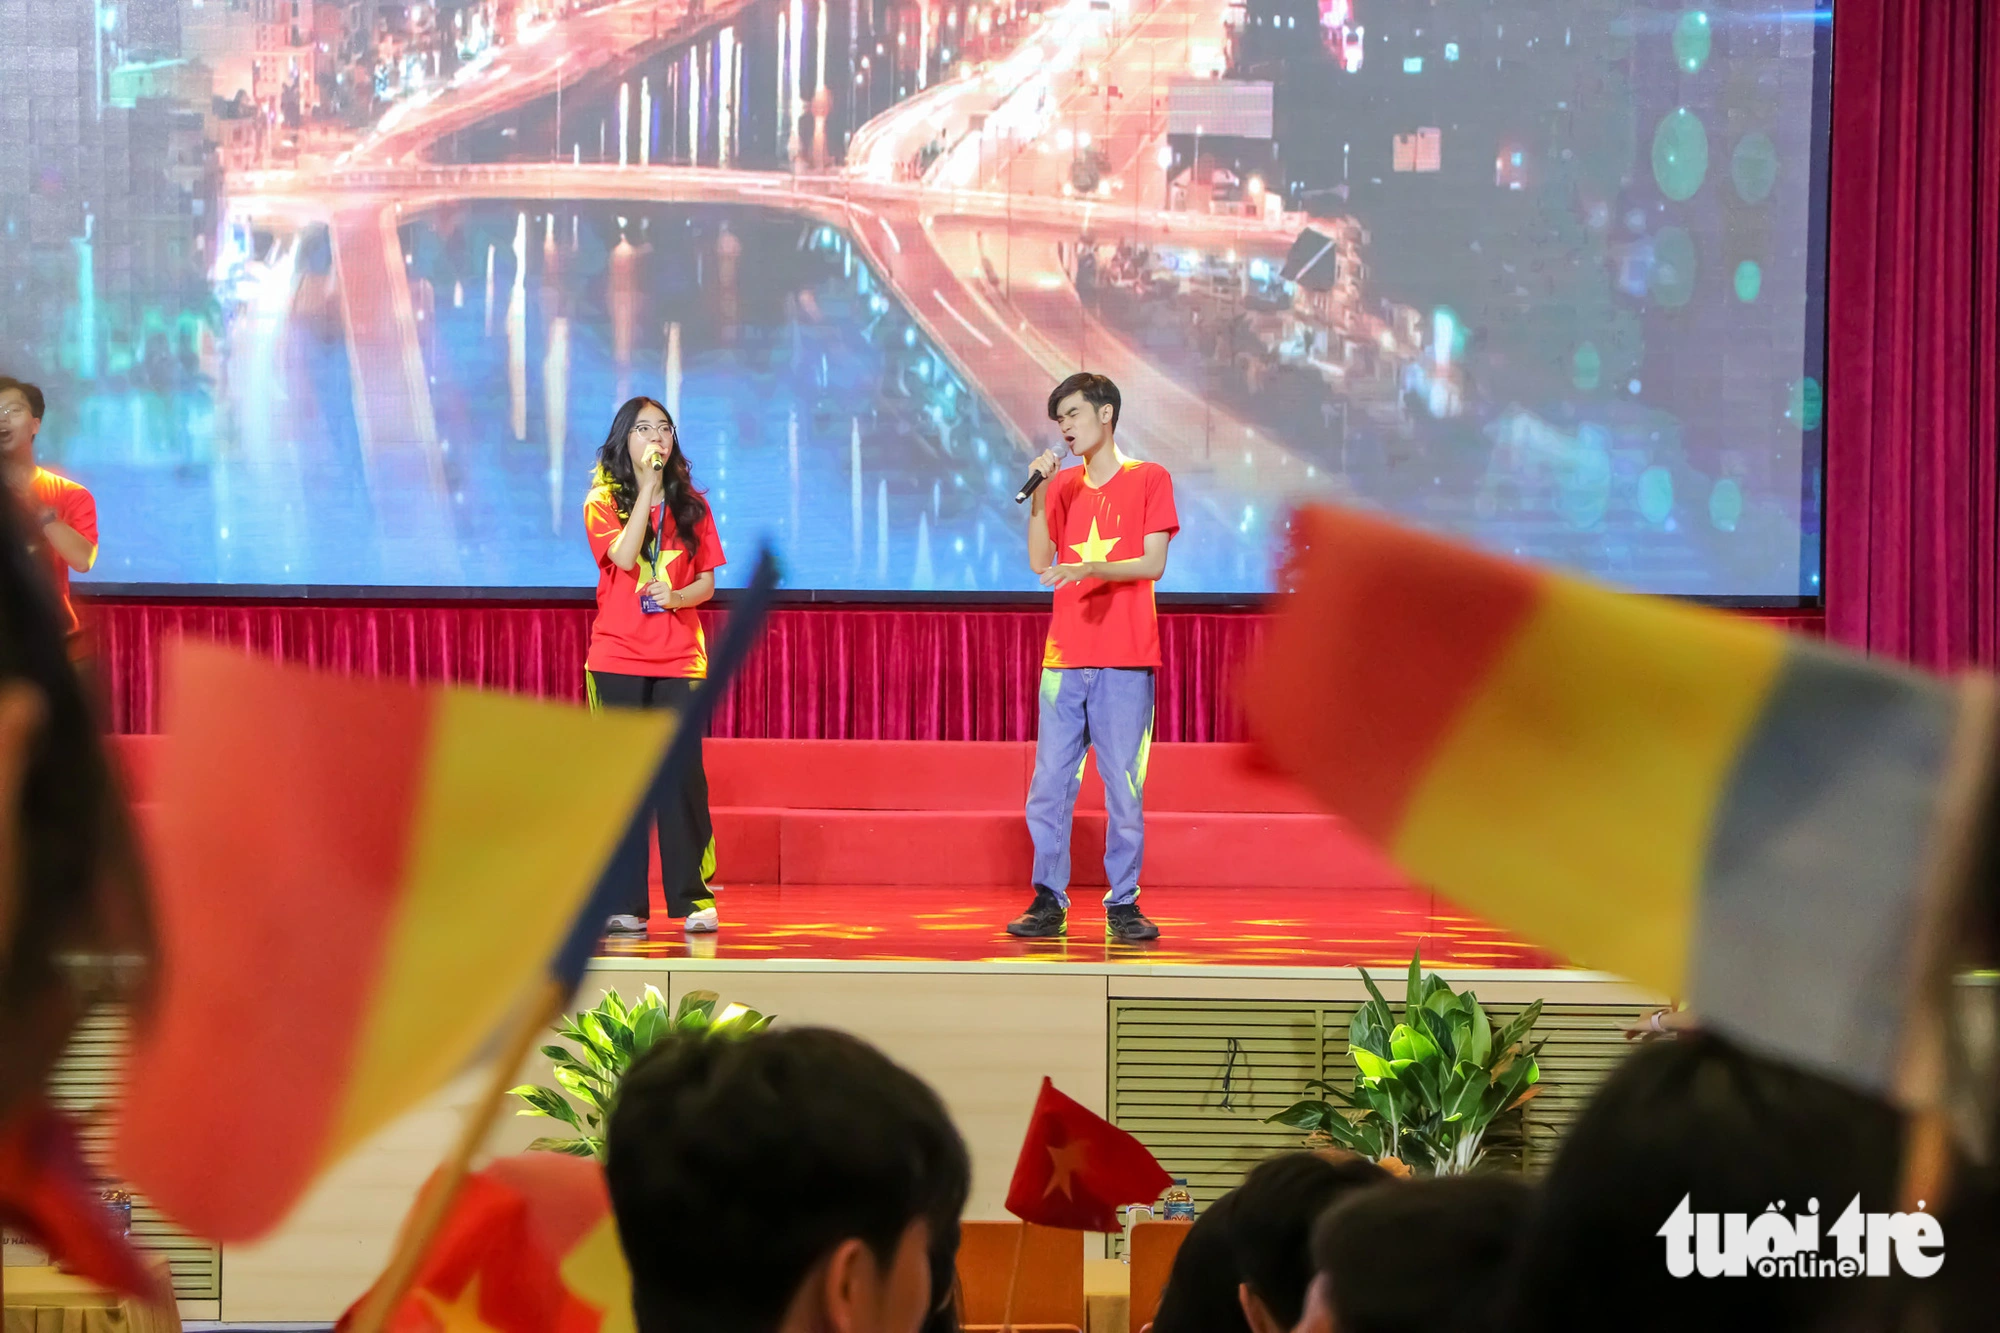 Các bạn trẻ Bộ Ngoại giao và Đại học Quốc gia Hà Nội cũng "đáp lễ" với các màn trình diễn gợi lên tình yêu quê hương, Tổ quốc - Ảnh: DUY LINH